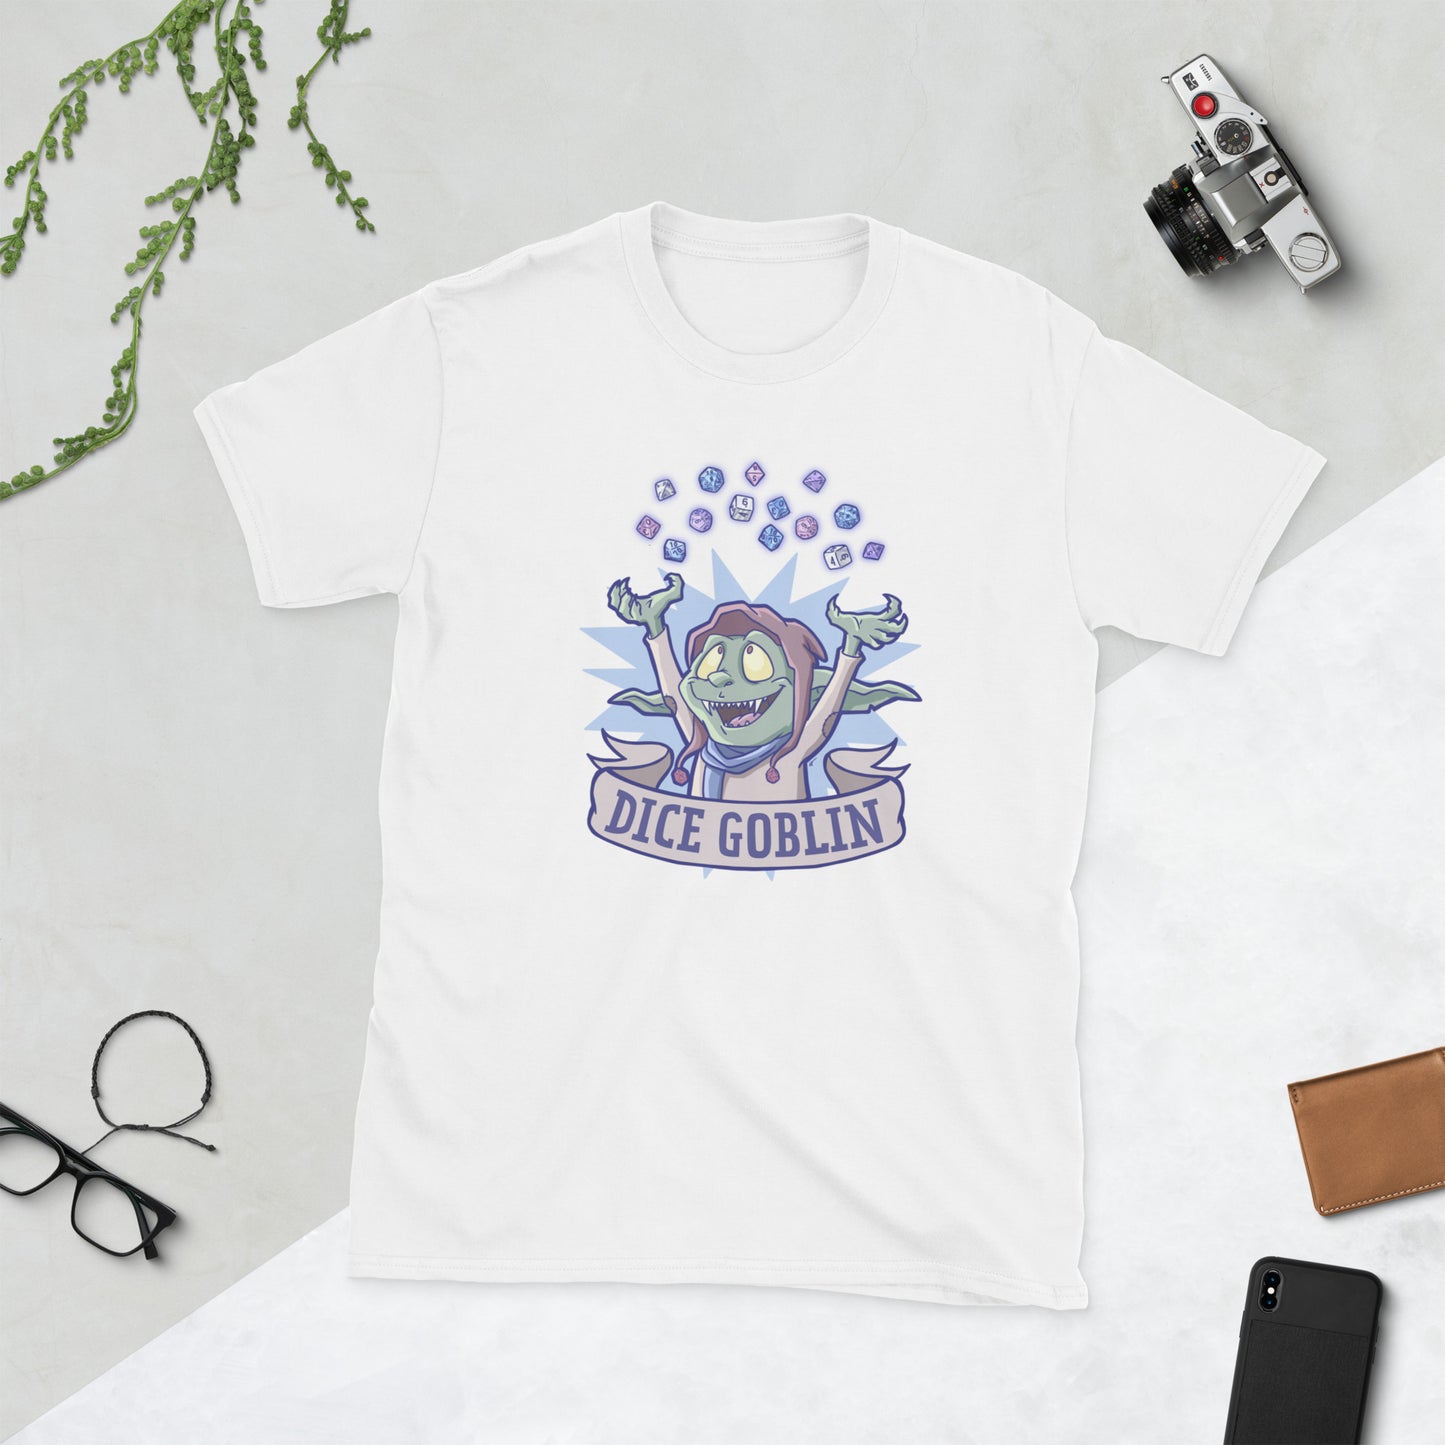 Dice Goblin Short-Sleeve Unisex T-Shirt  Level 1 Gamers White S 